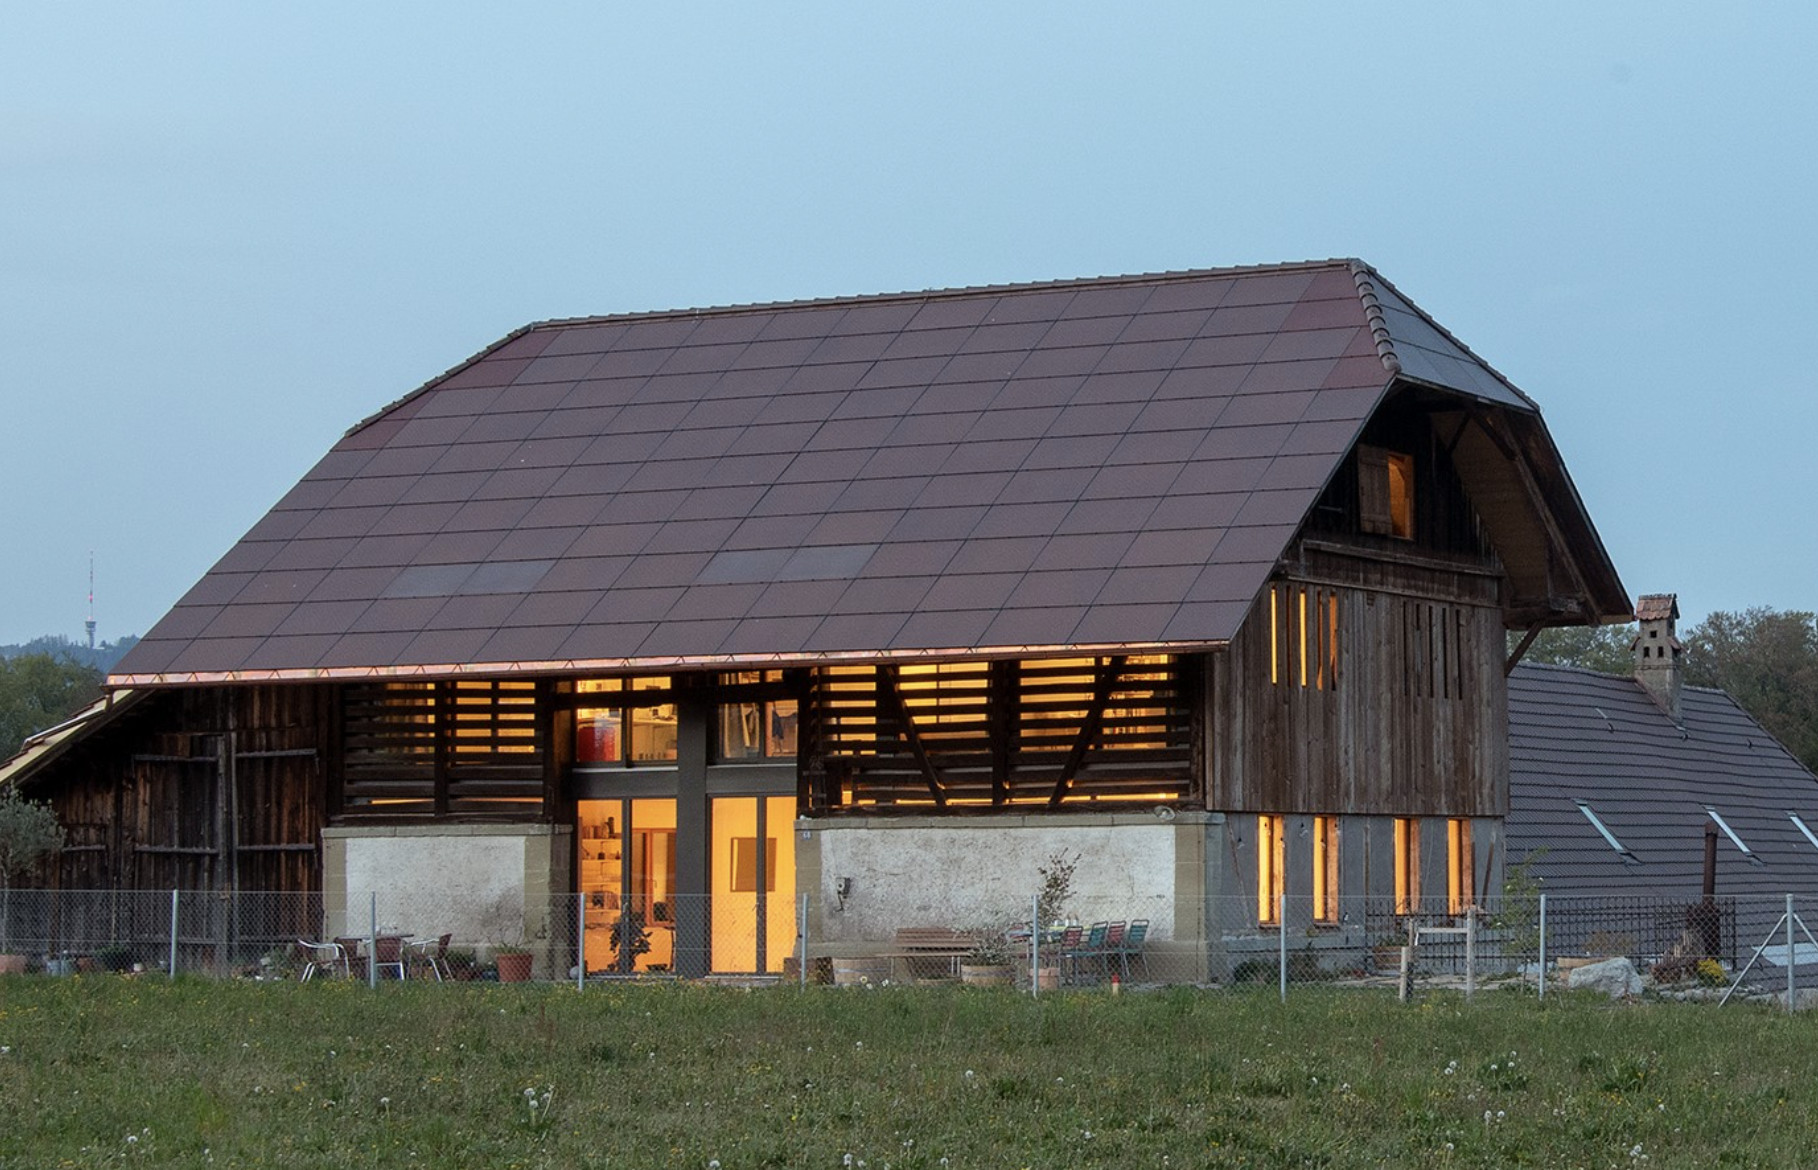 Altes Bauernhaus mit Solarmodulen auf dem Dach